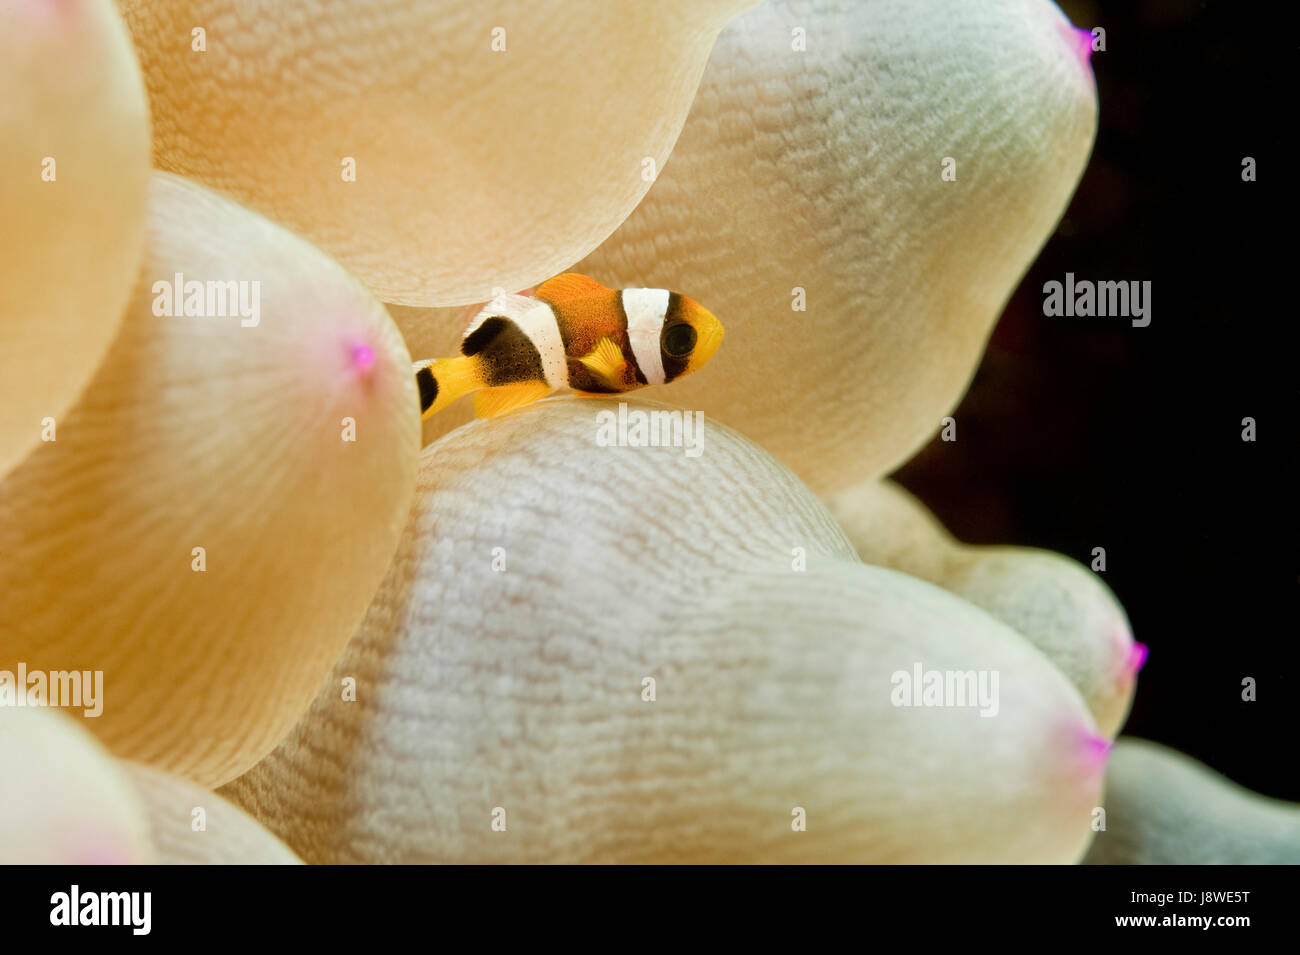 Clark's juvénile poisson clown (Amphiprion clarkii) en Anémone de mer (Actiniaria), de la mer d'Oman, Oman Banque D'Images